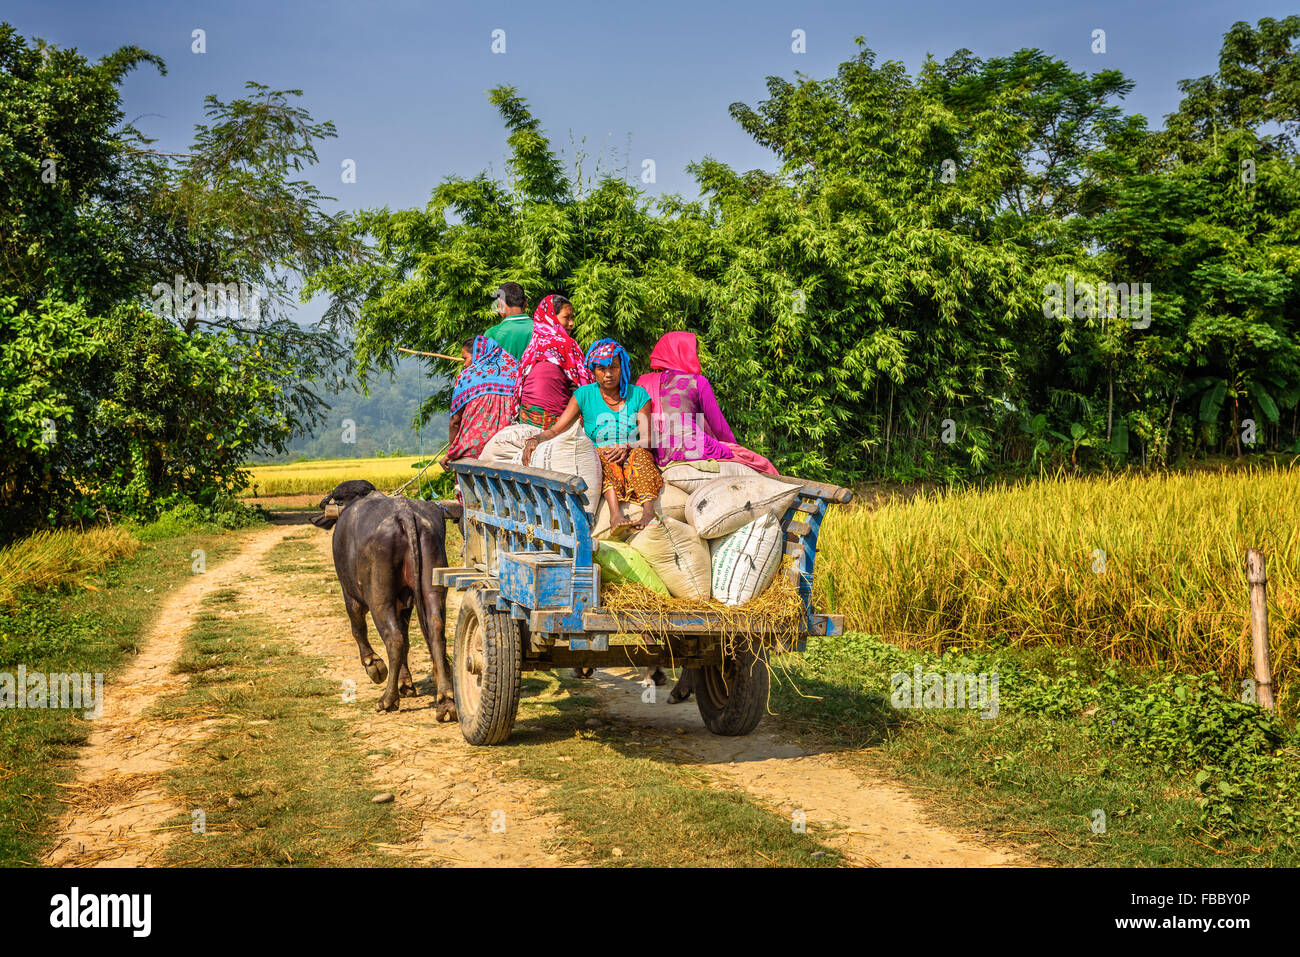 CHITWAN, NÉPAL - 24 octobre 2015 : peuple népalais voyageant sur un chariot en bois attaché à une paire de taureaux. Village traditionnel Banque D'Images